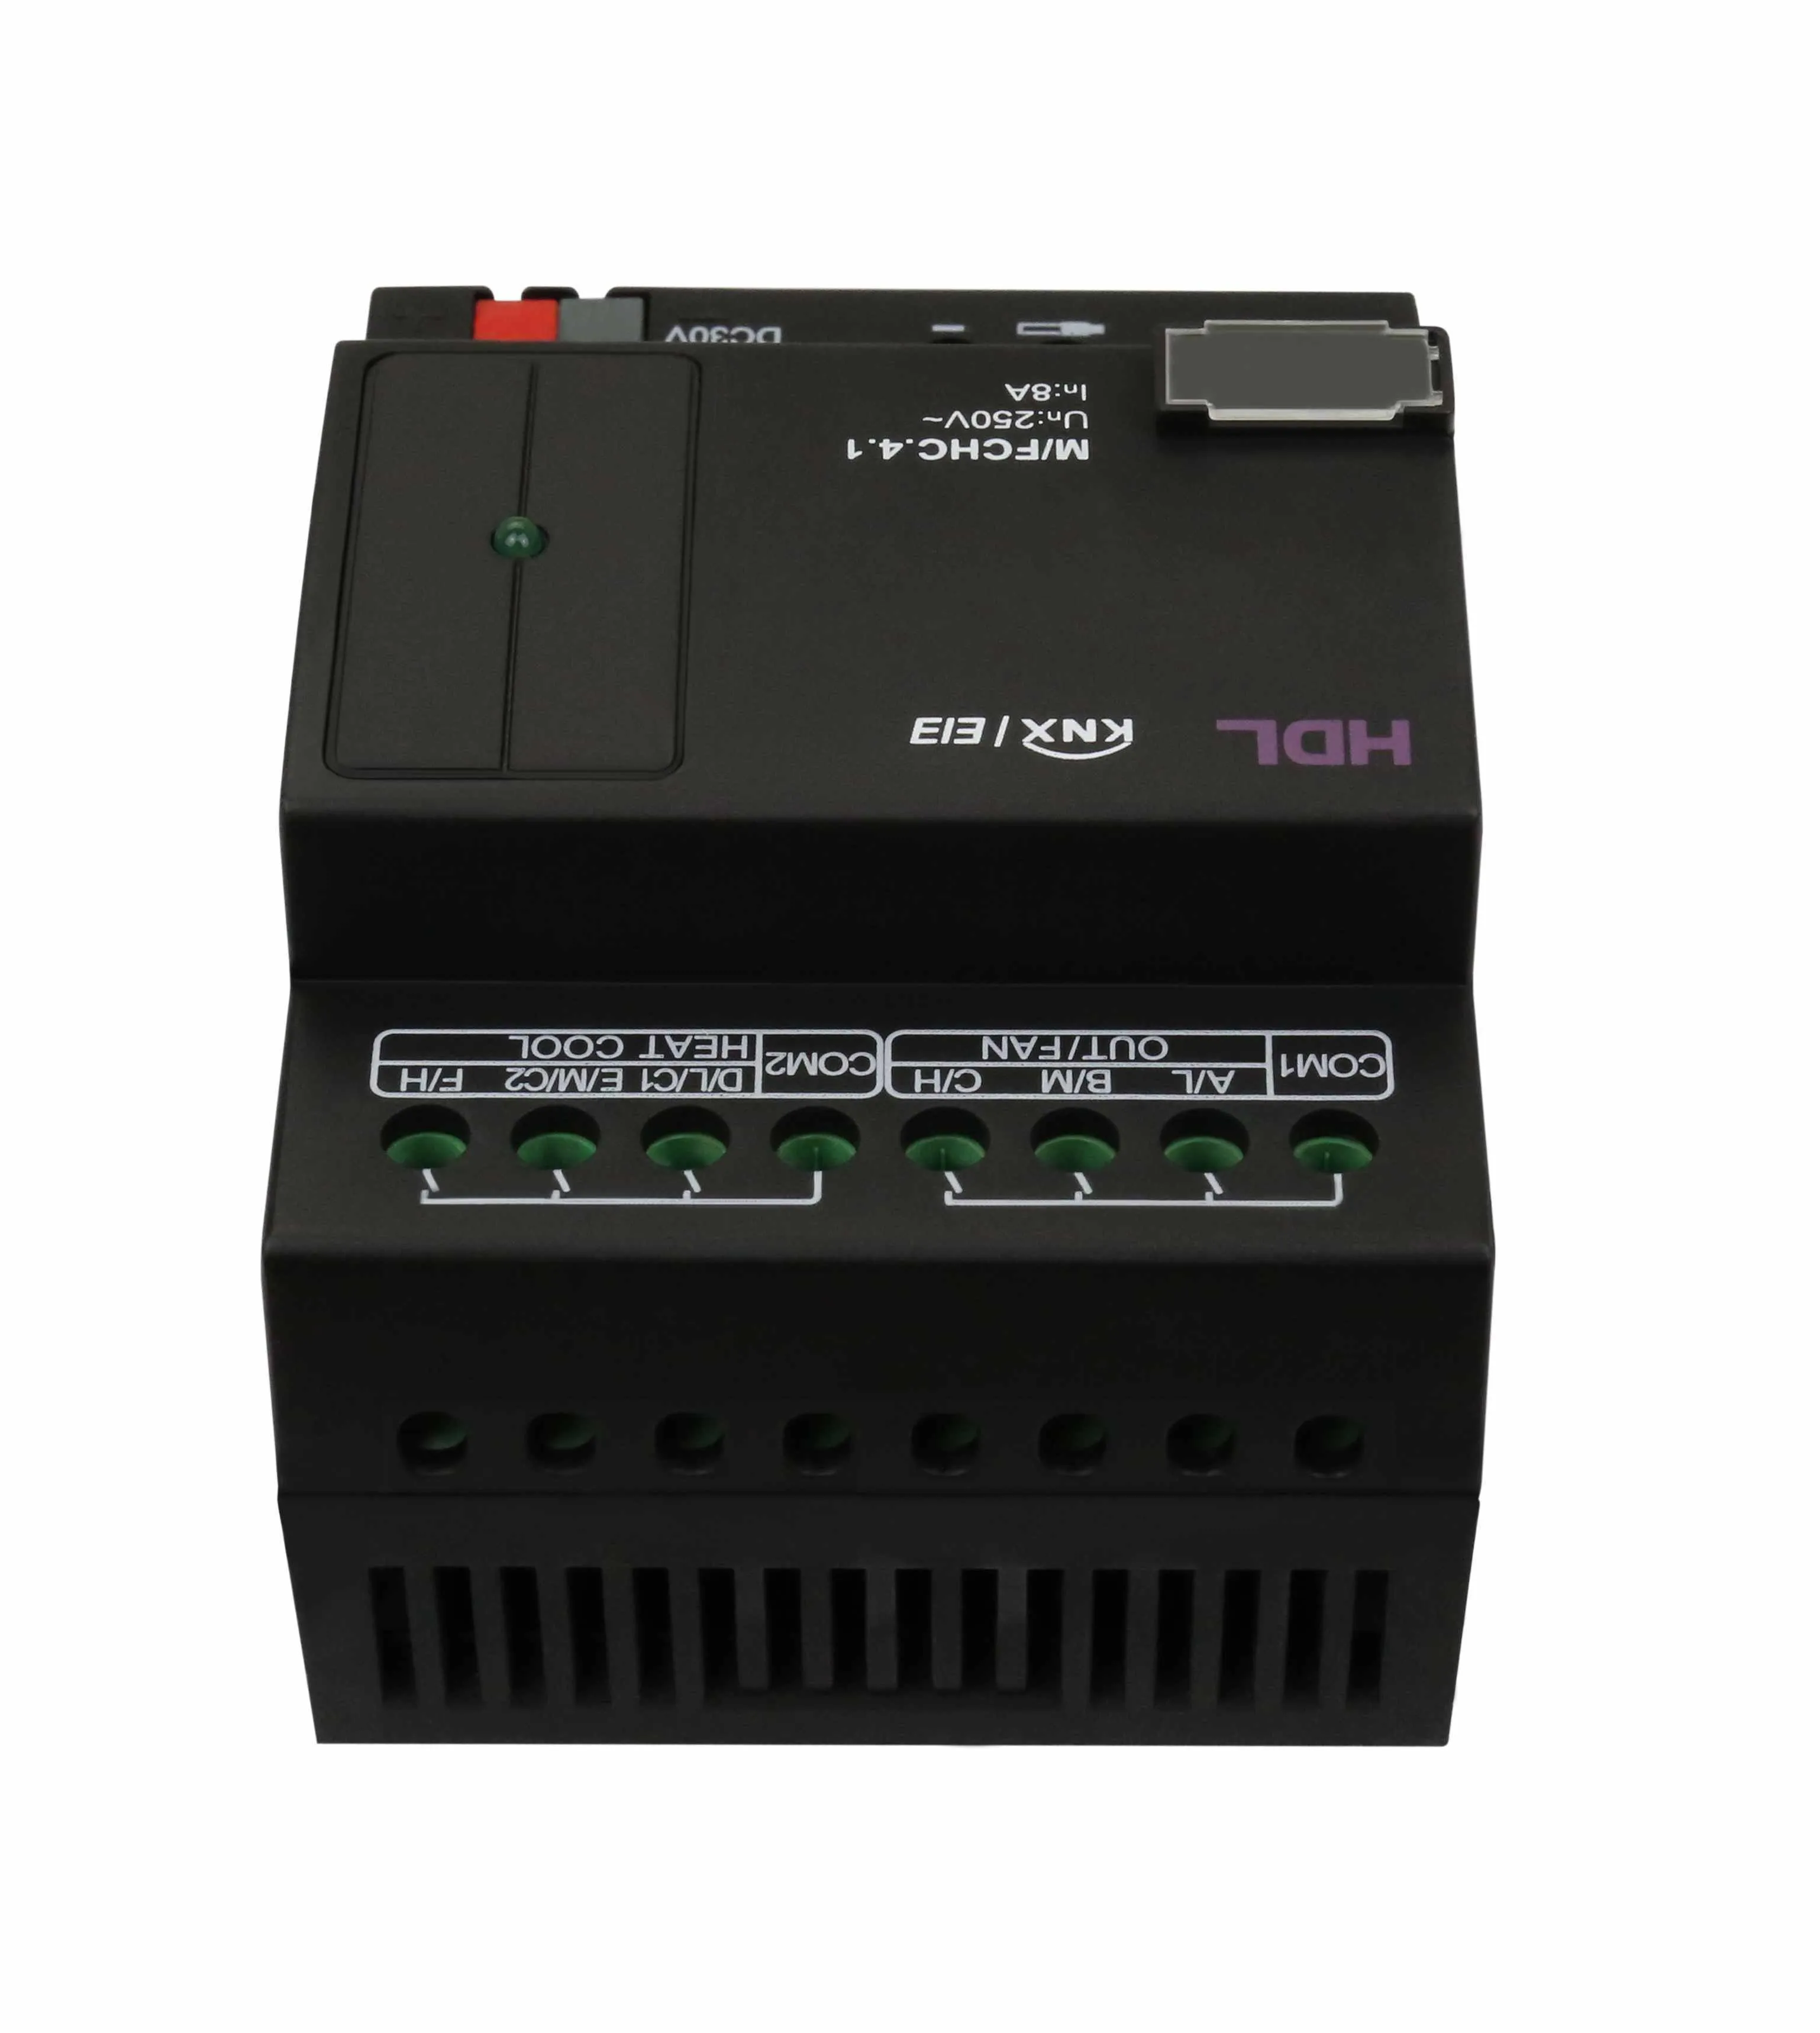 FCHC актуатор для управления кондиционером, вентиляторами, конвекторами и теплым полом фото 2